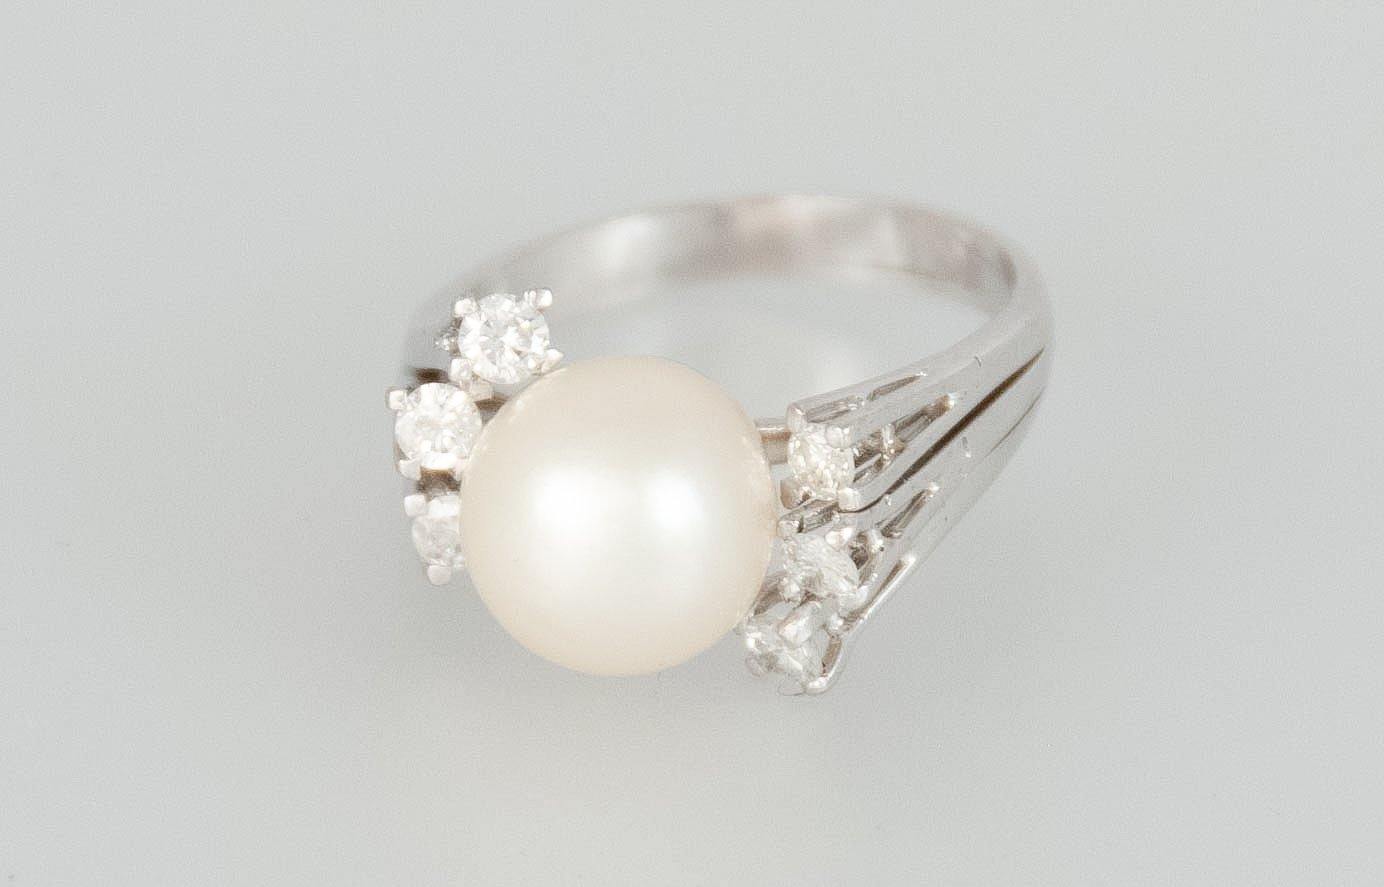 Anillo en oro blanco 18k con perla natural y brillantes - Mayka Jewels